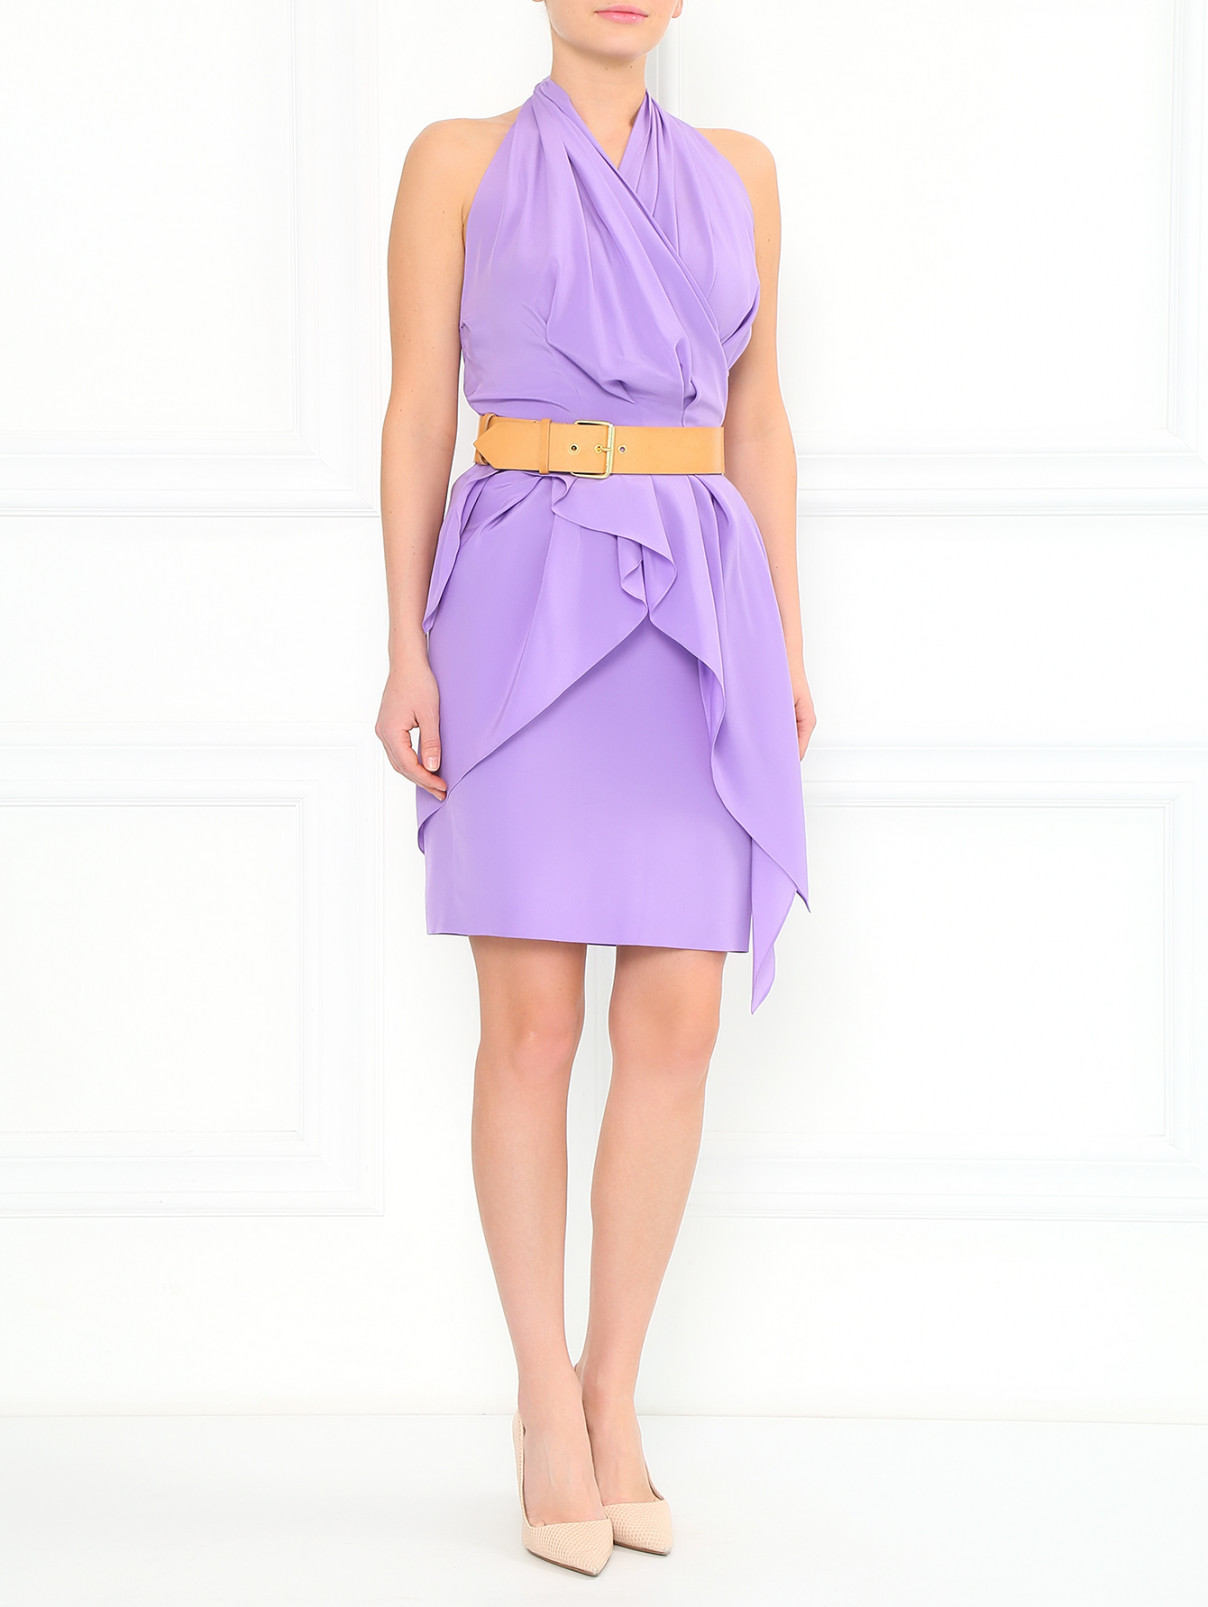 Шелковое платье с драпировкой и кожаным ремнем Moschino  –  Модель Общий вид  – Цвет:  Фиолетовый